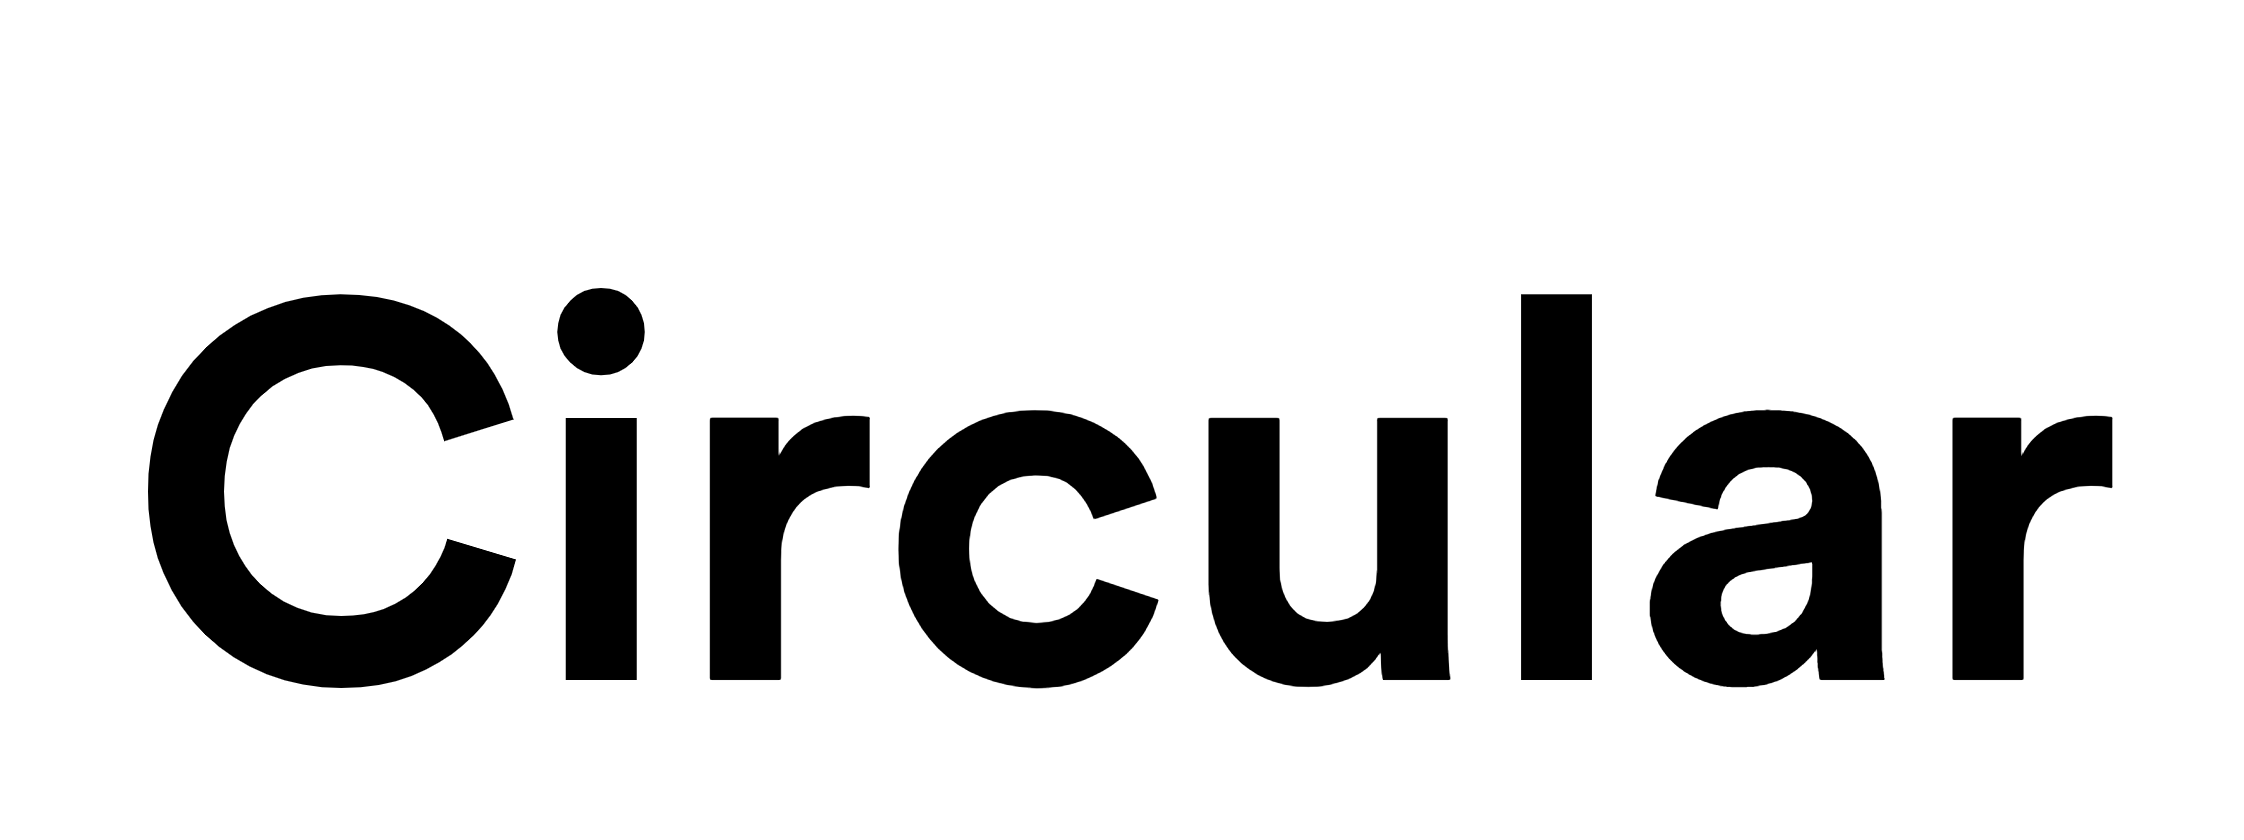 Circular font